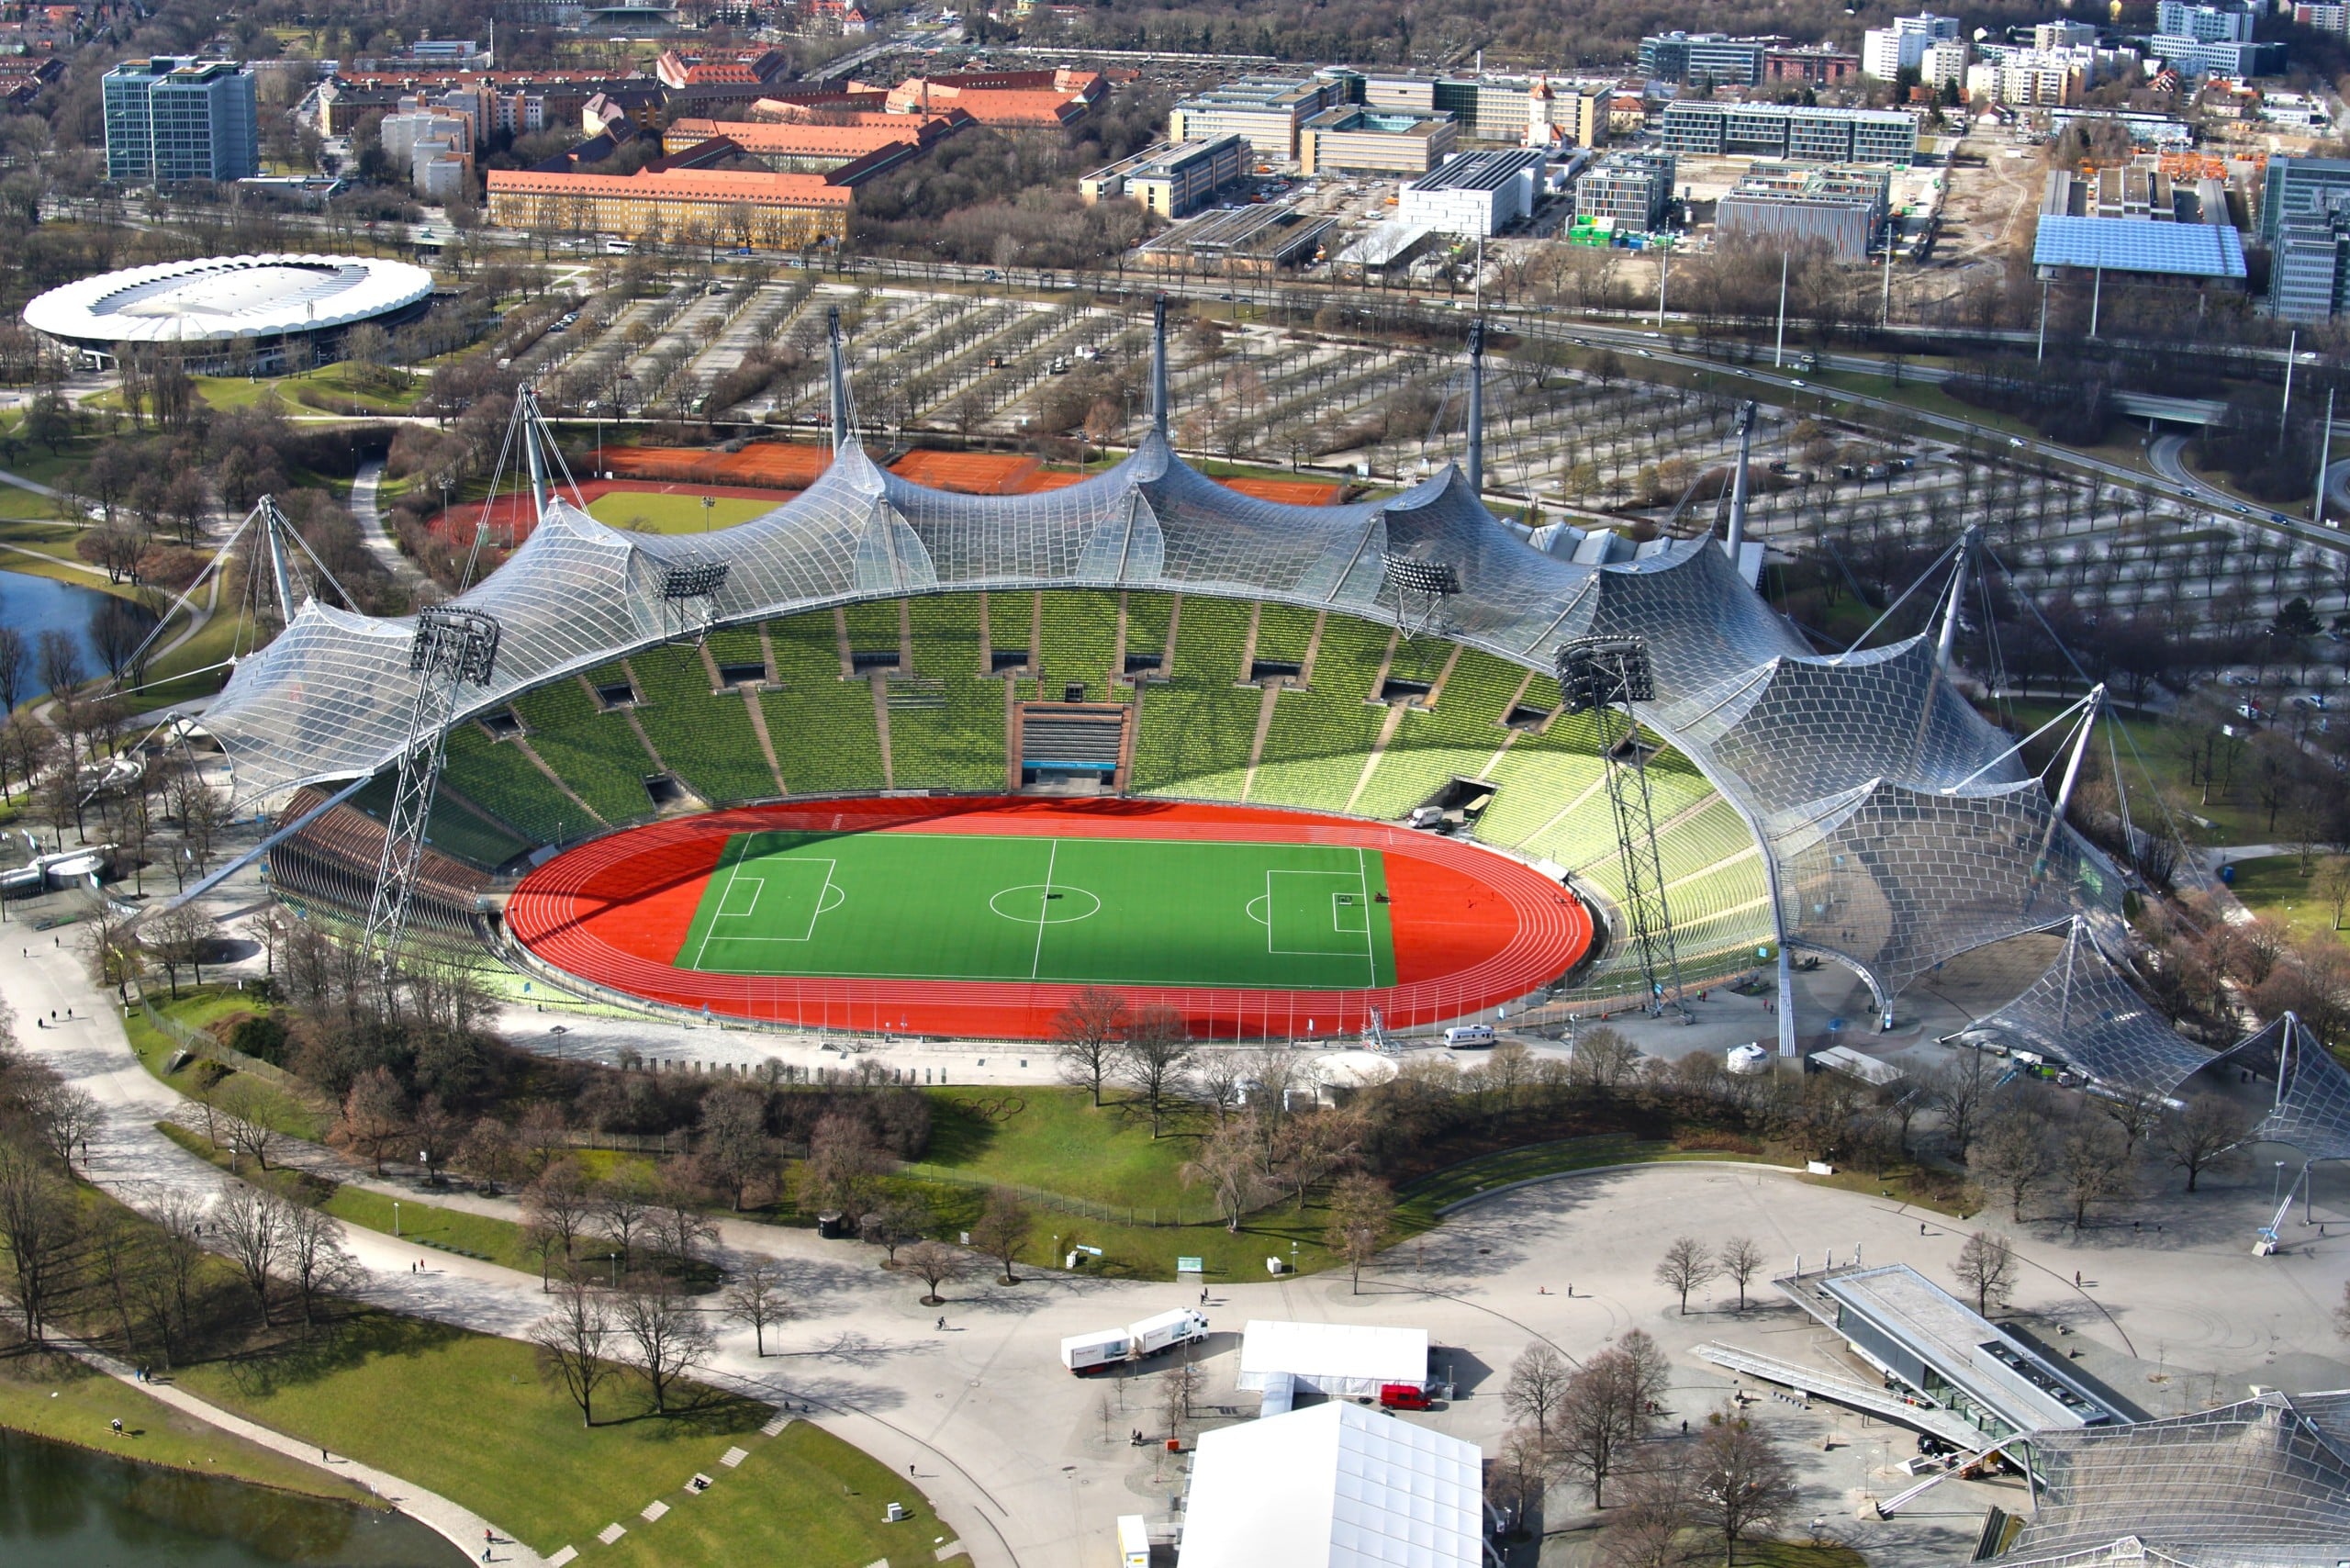 Das Olympiastadion München aus der Vogelperspektive. Foto: Pxhere